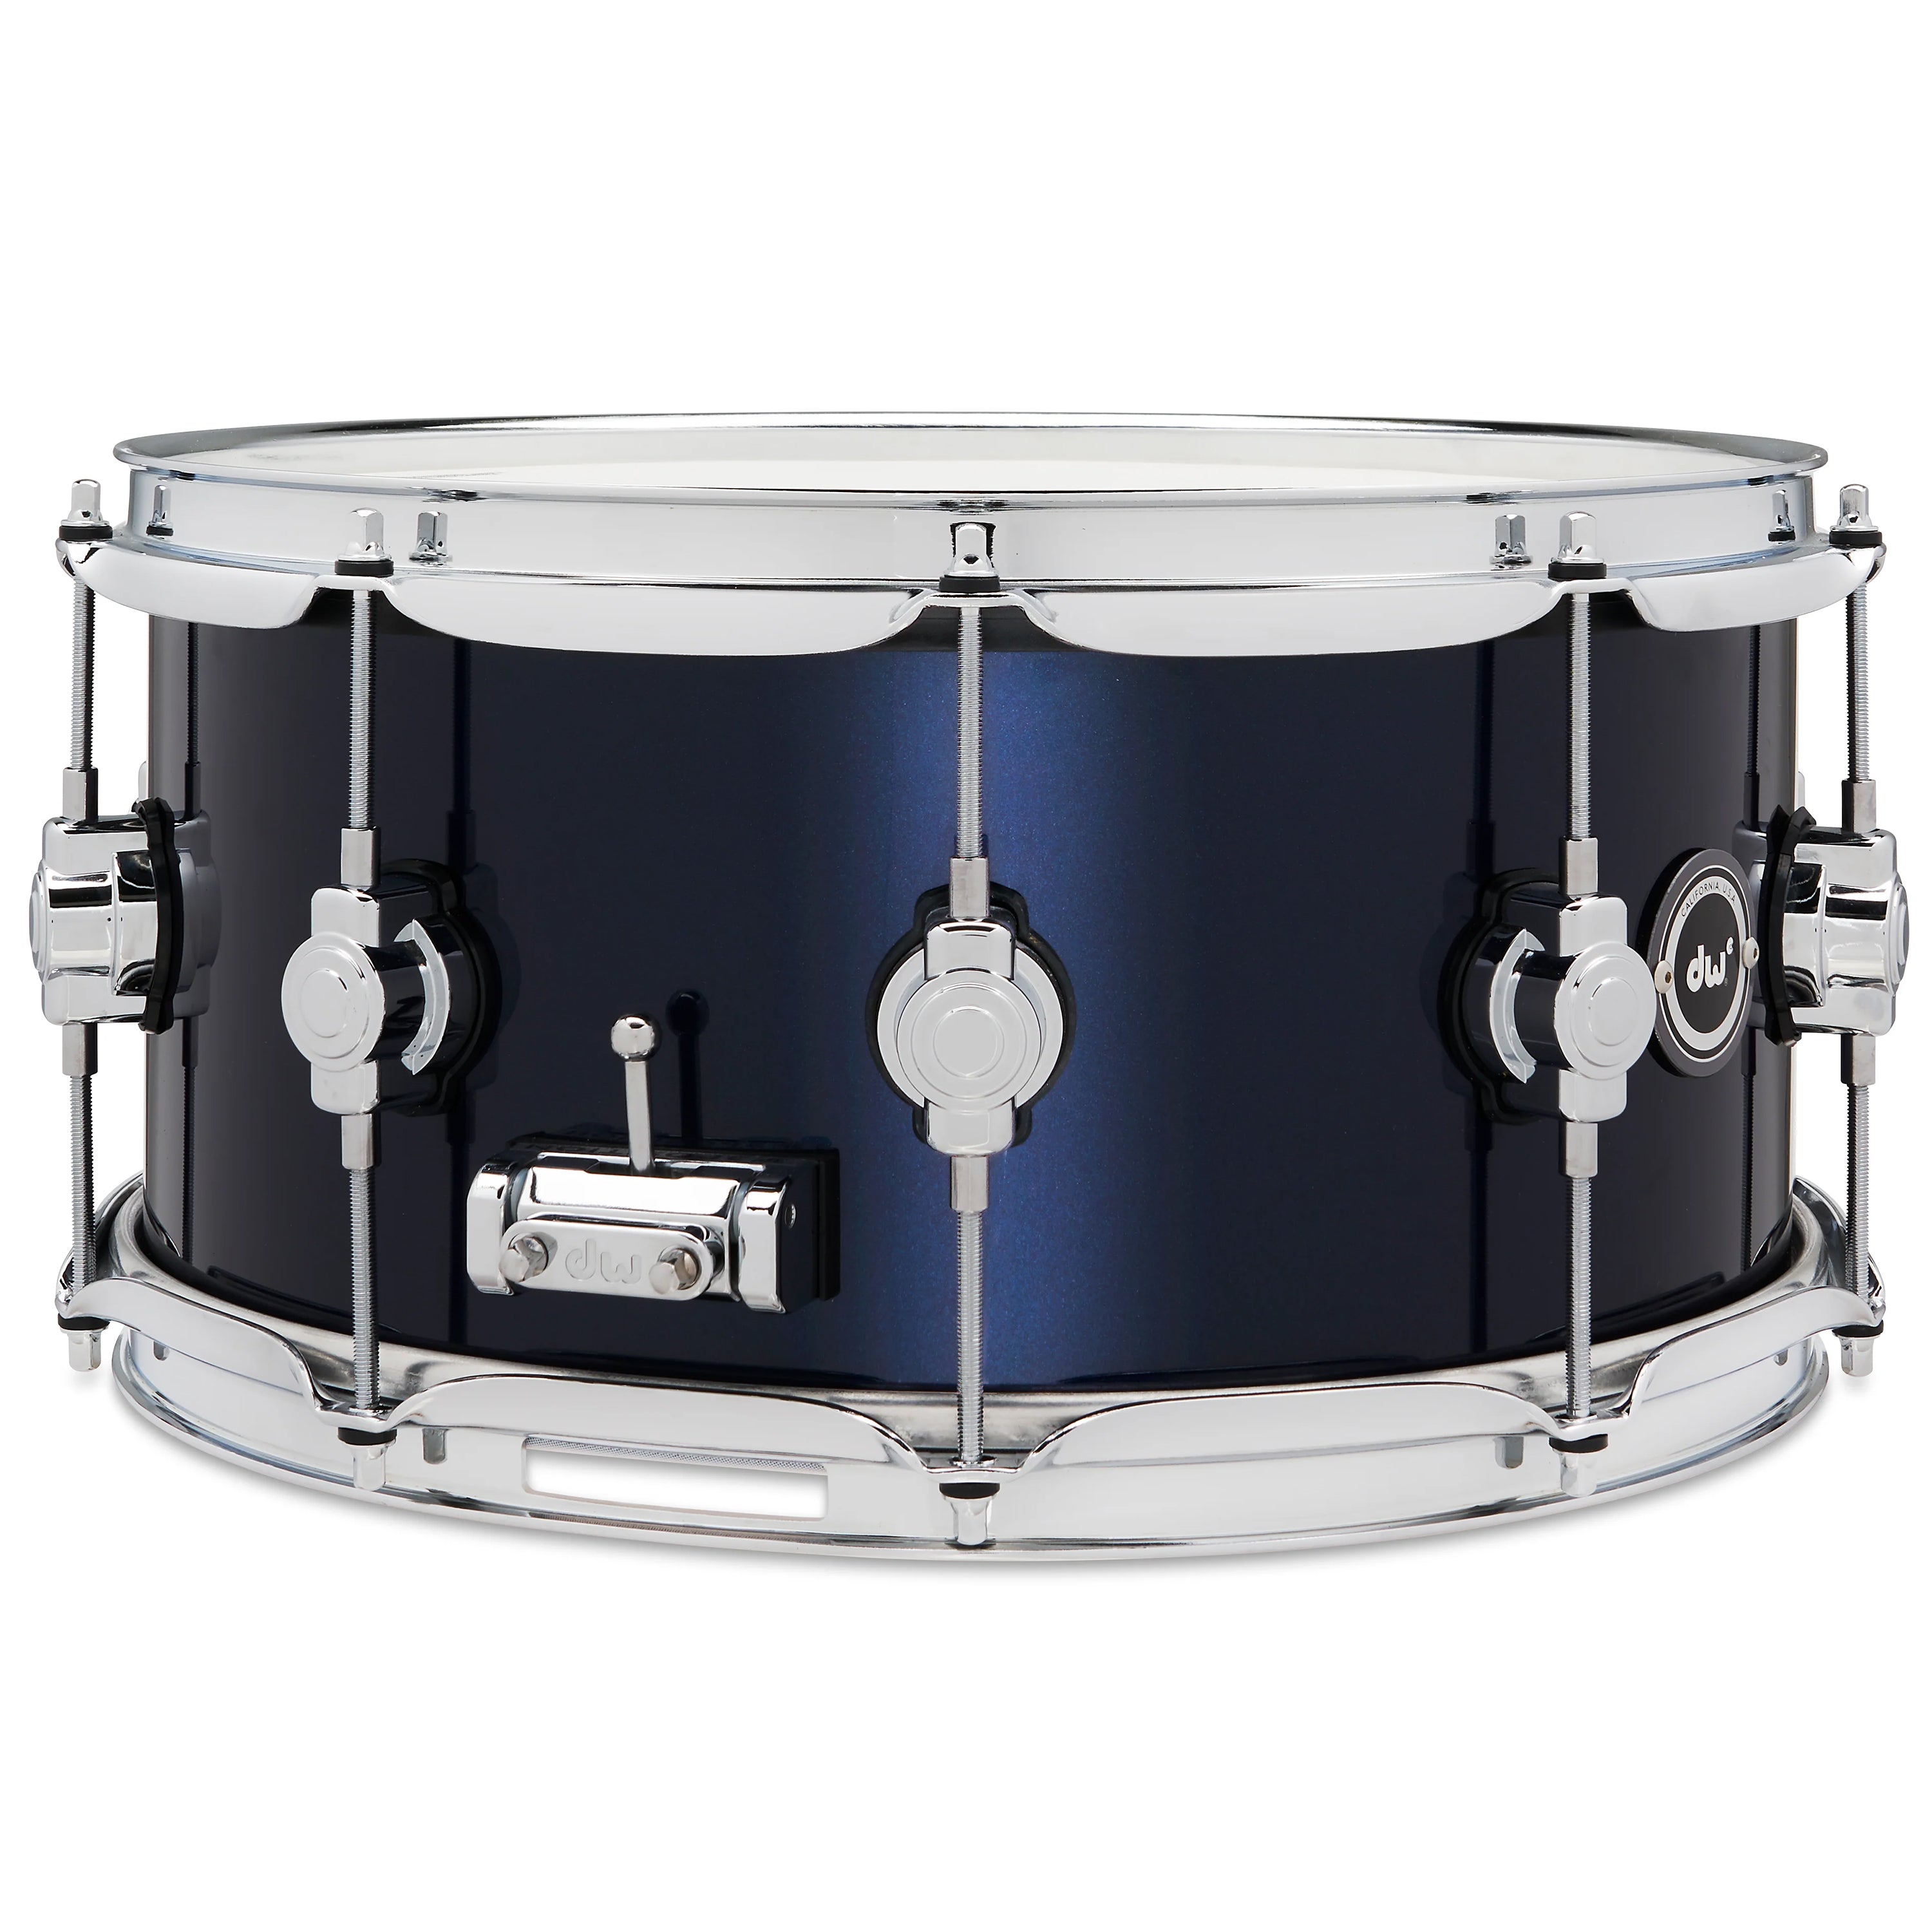 Drum Workshop DWe Snare 6.5x14" - Midnight Blue Metallic, View 5